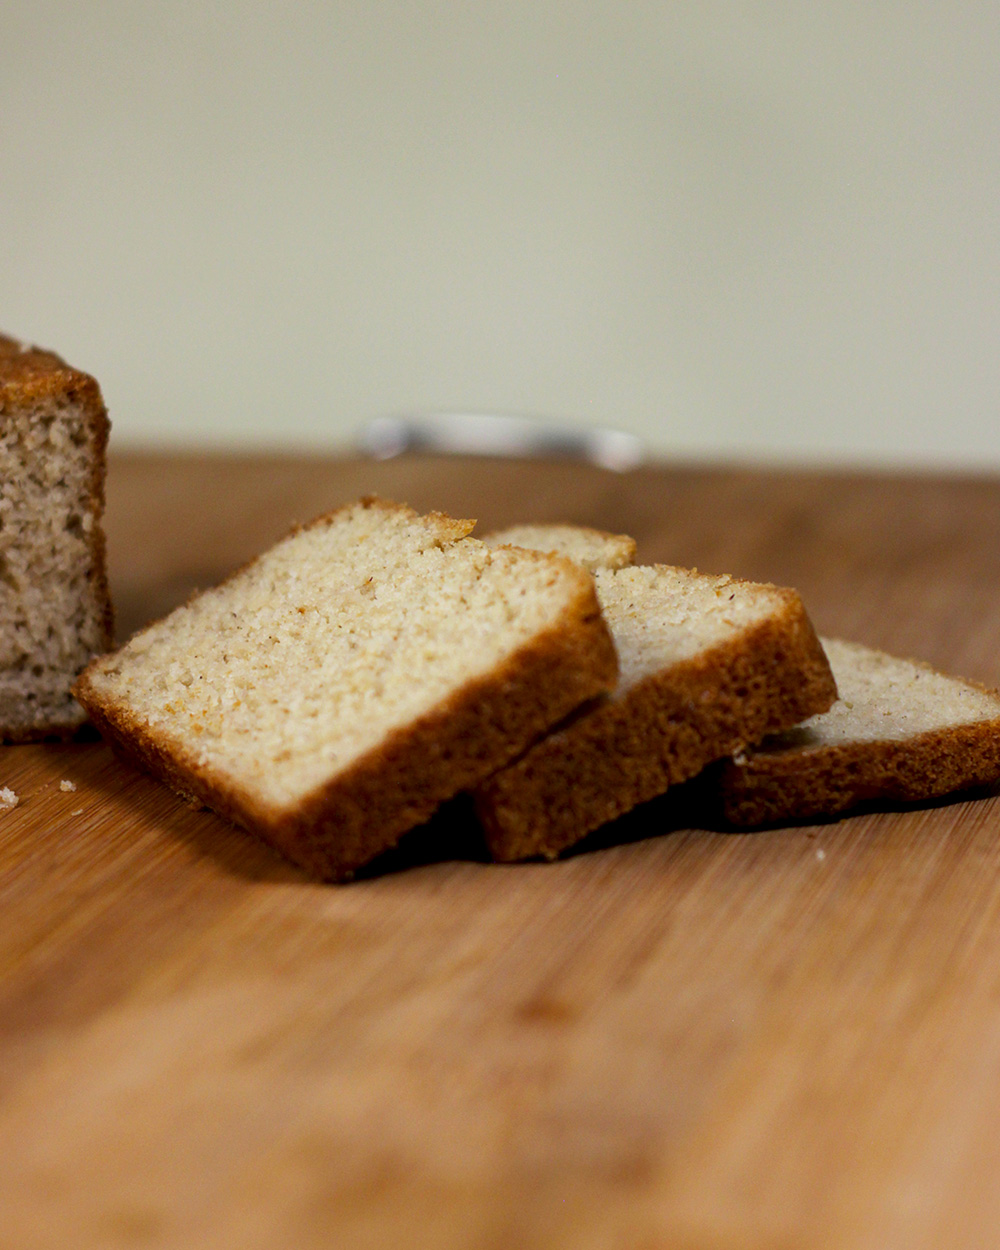 Buy Gluten-Free Sandwich Bread | Low Carb Bread - Cinnamon Kitchen